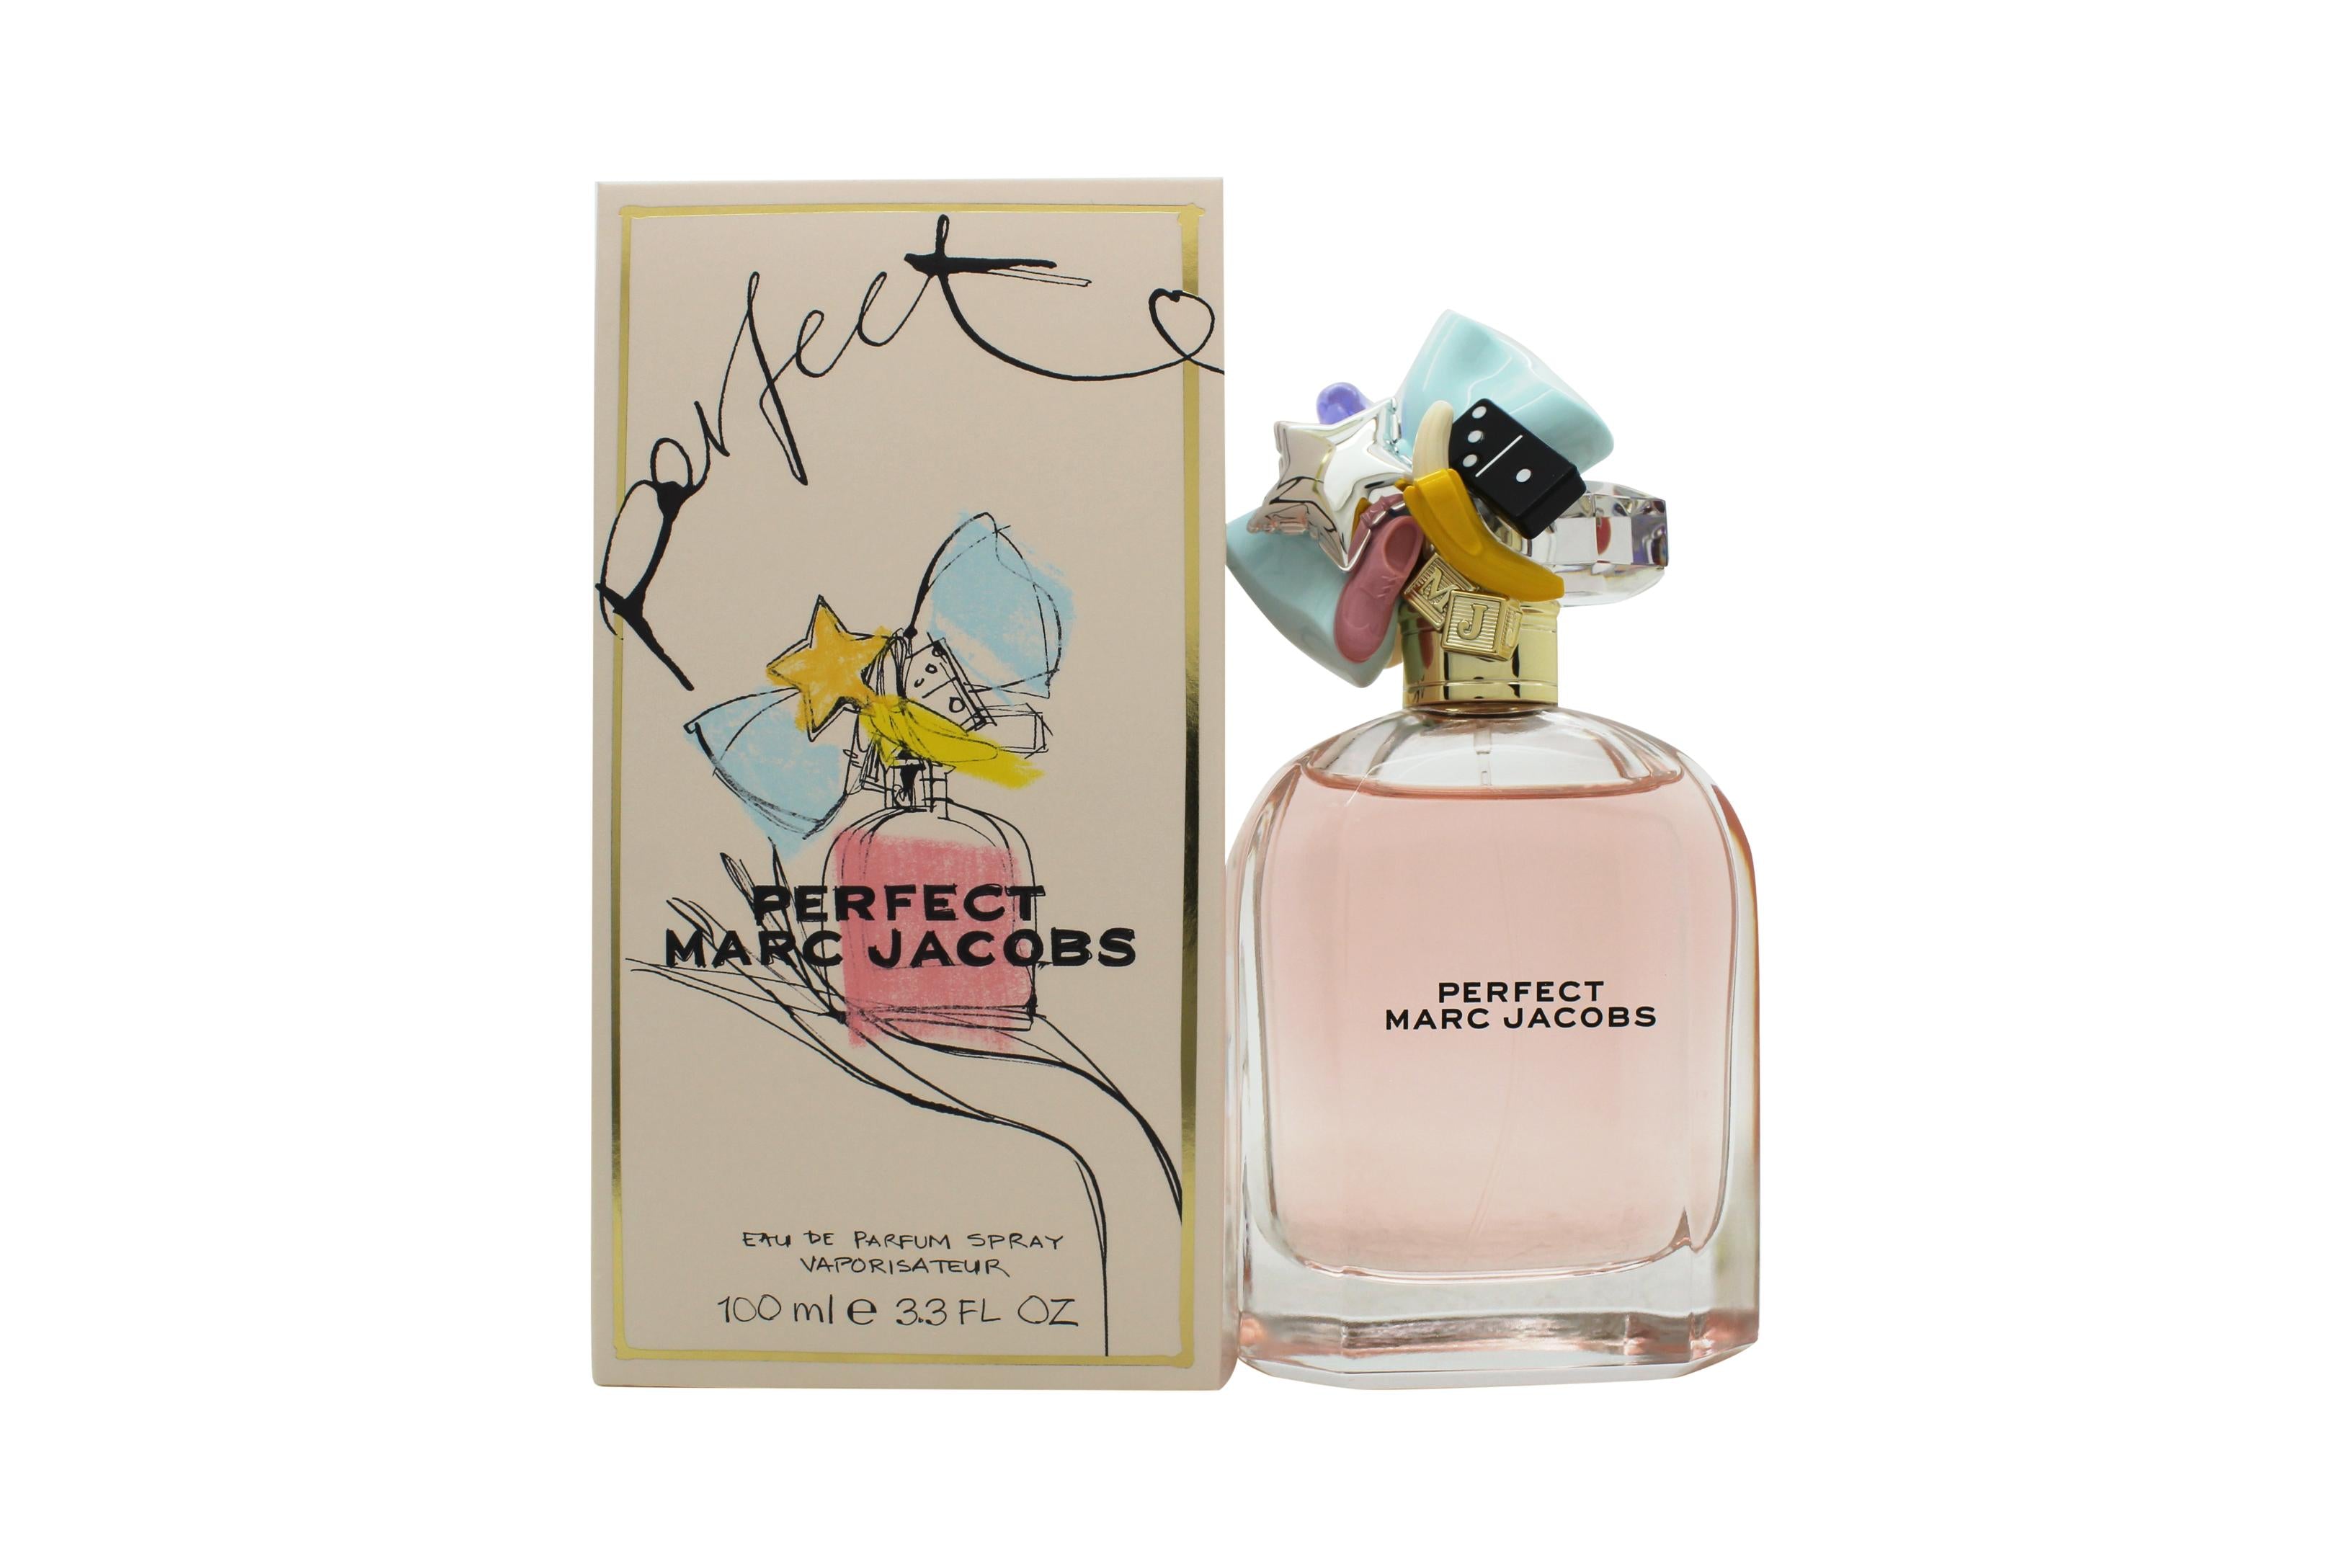 View Marc Jacobs Perfect Eau de Parfum 100ml Spray information